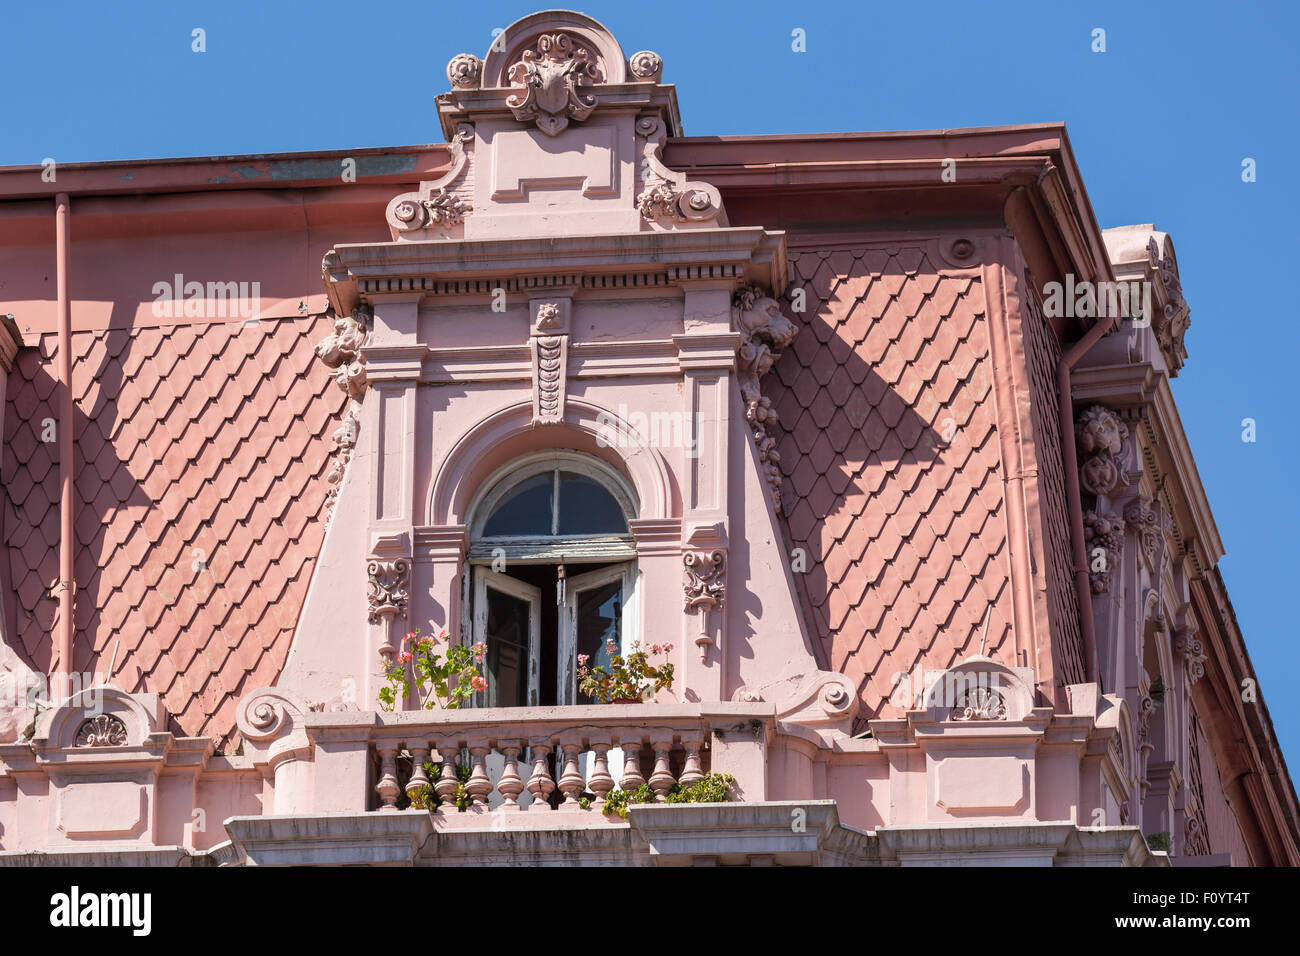 Balcon sur l'édifice colonial à Valparaiso, Chili Banque D'Images